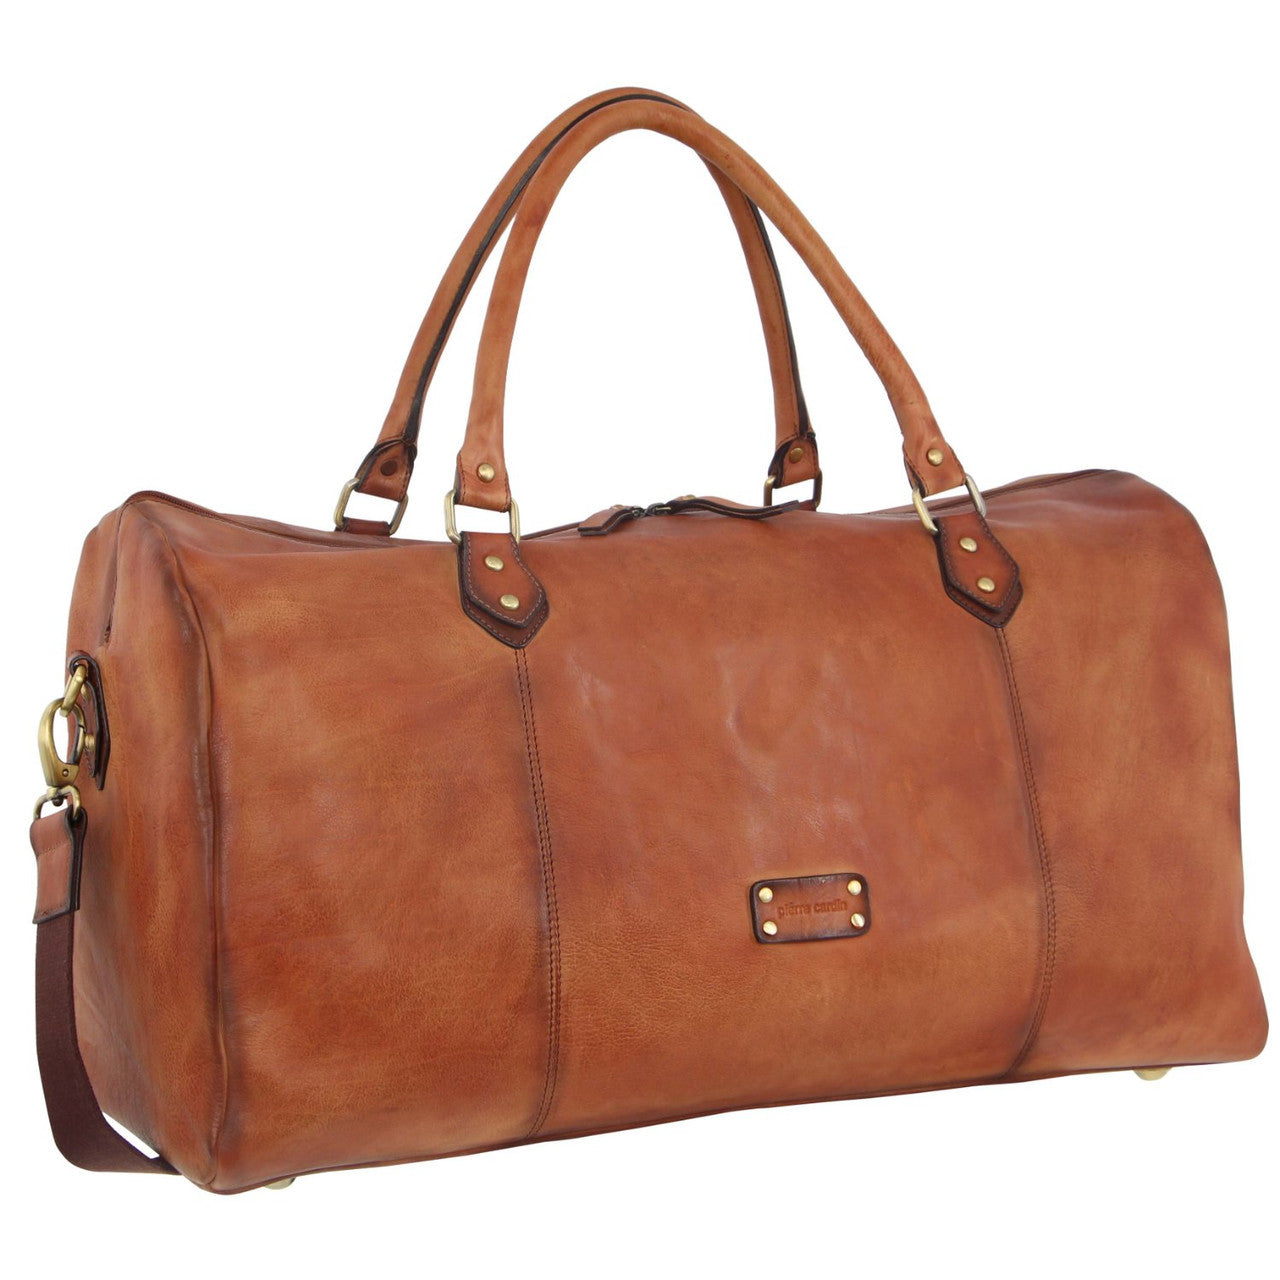 Pierre Cardin - 56cm Leather overnight bag PC3335 - Cognac-1